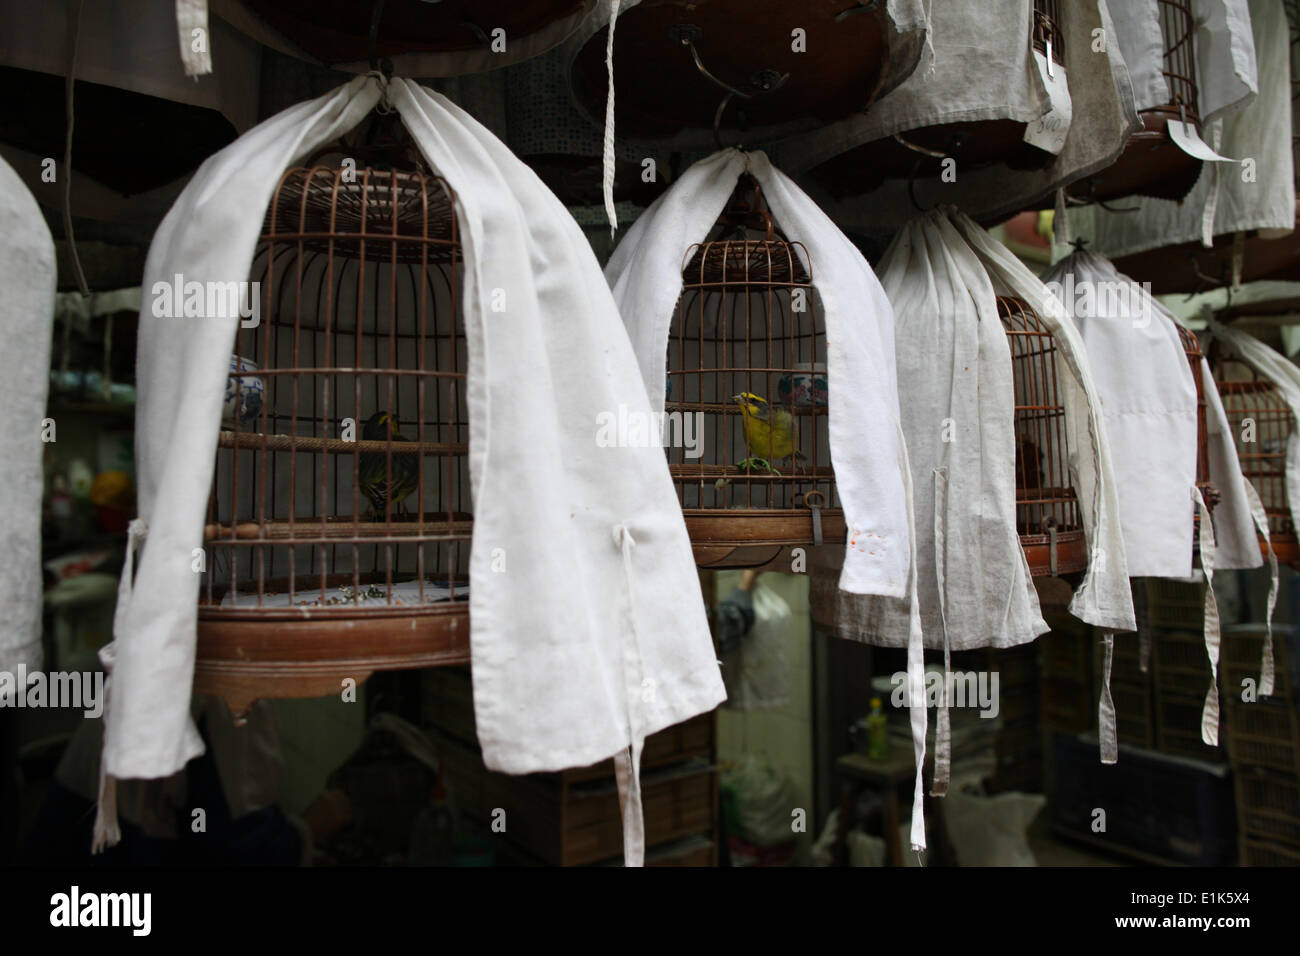 Bird market in Kowloon. Stock Photo